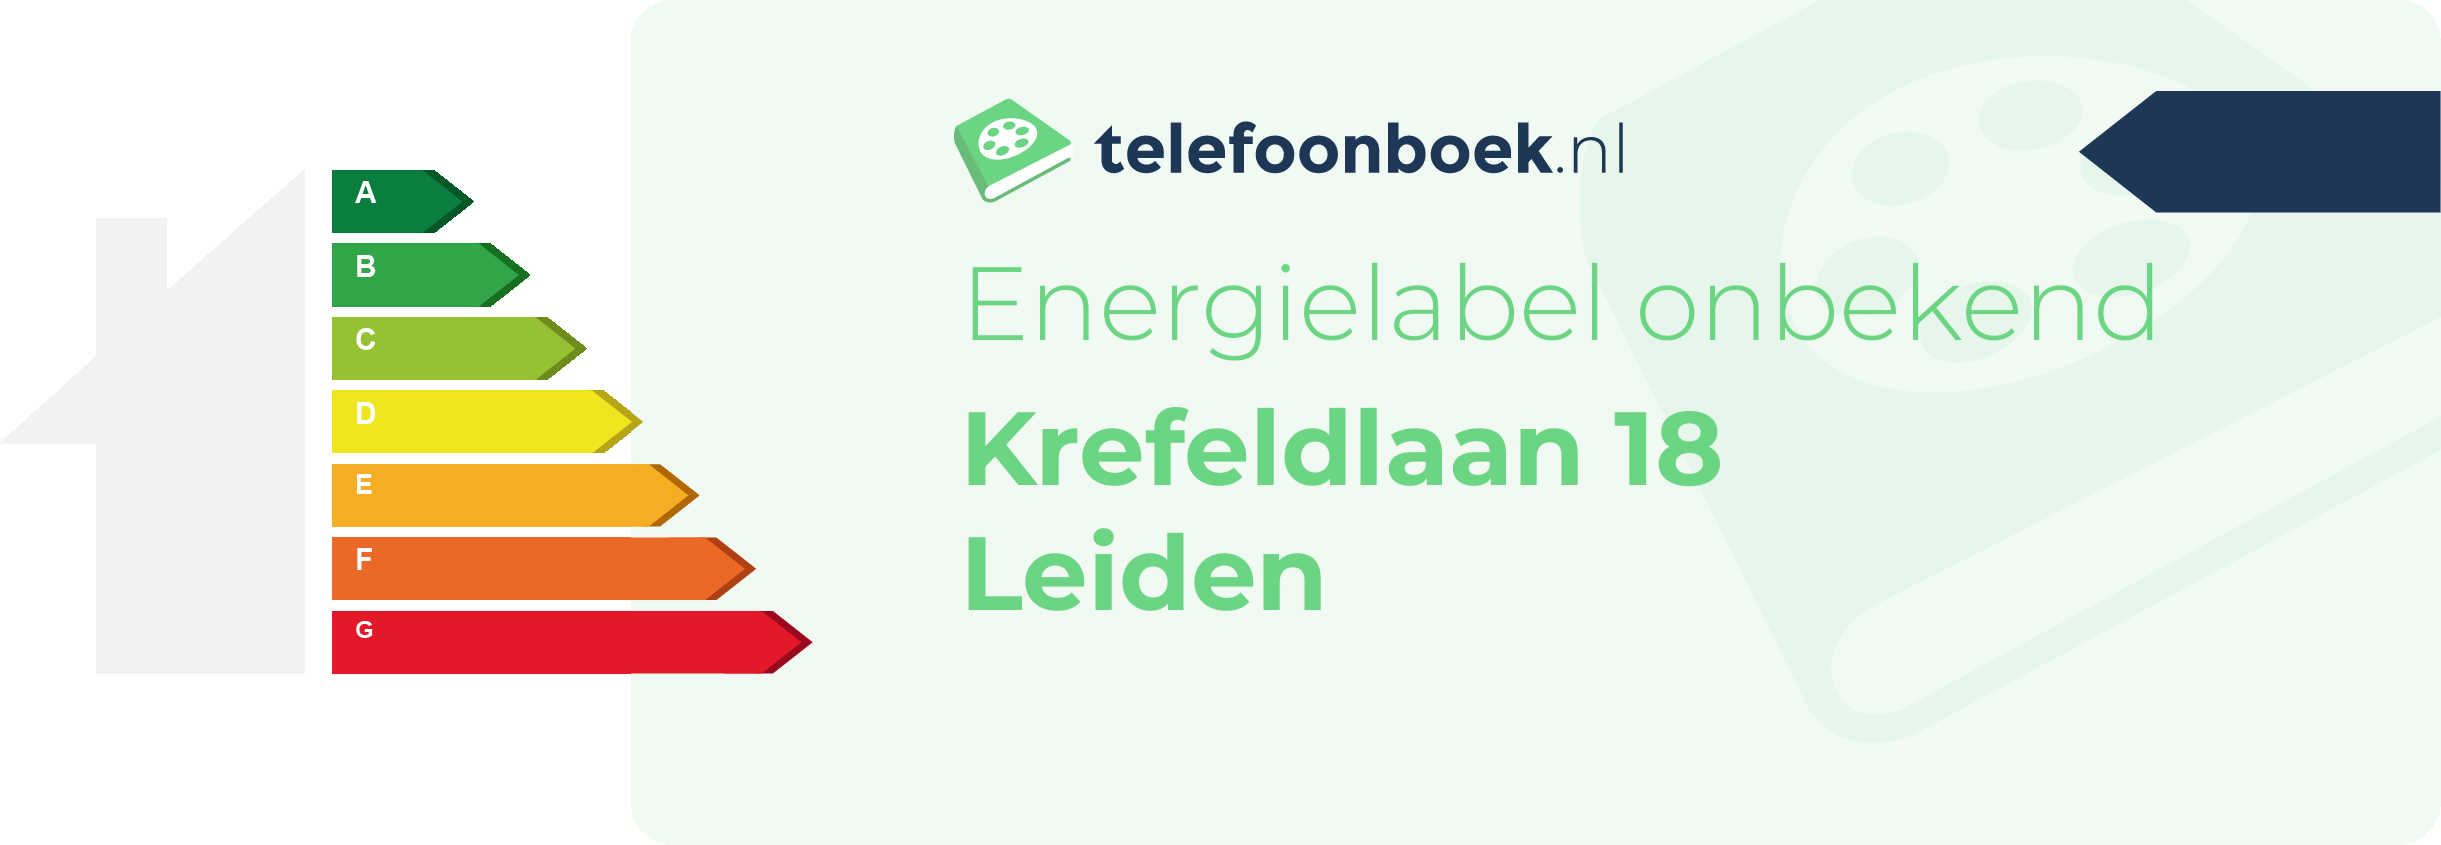 Energielabel Krefeldlaan 18 Leiden